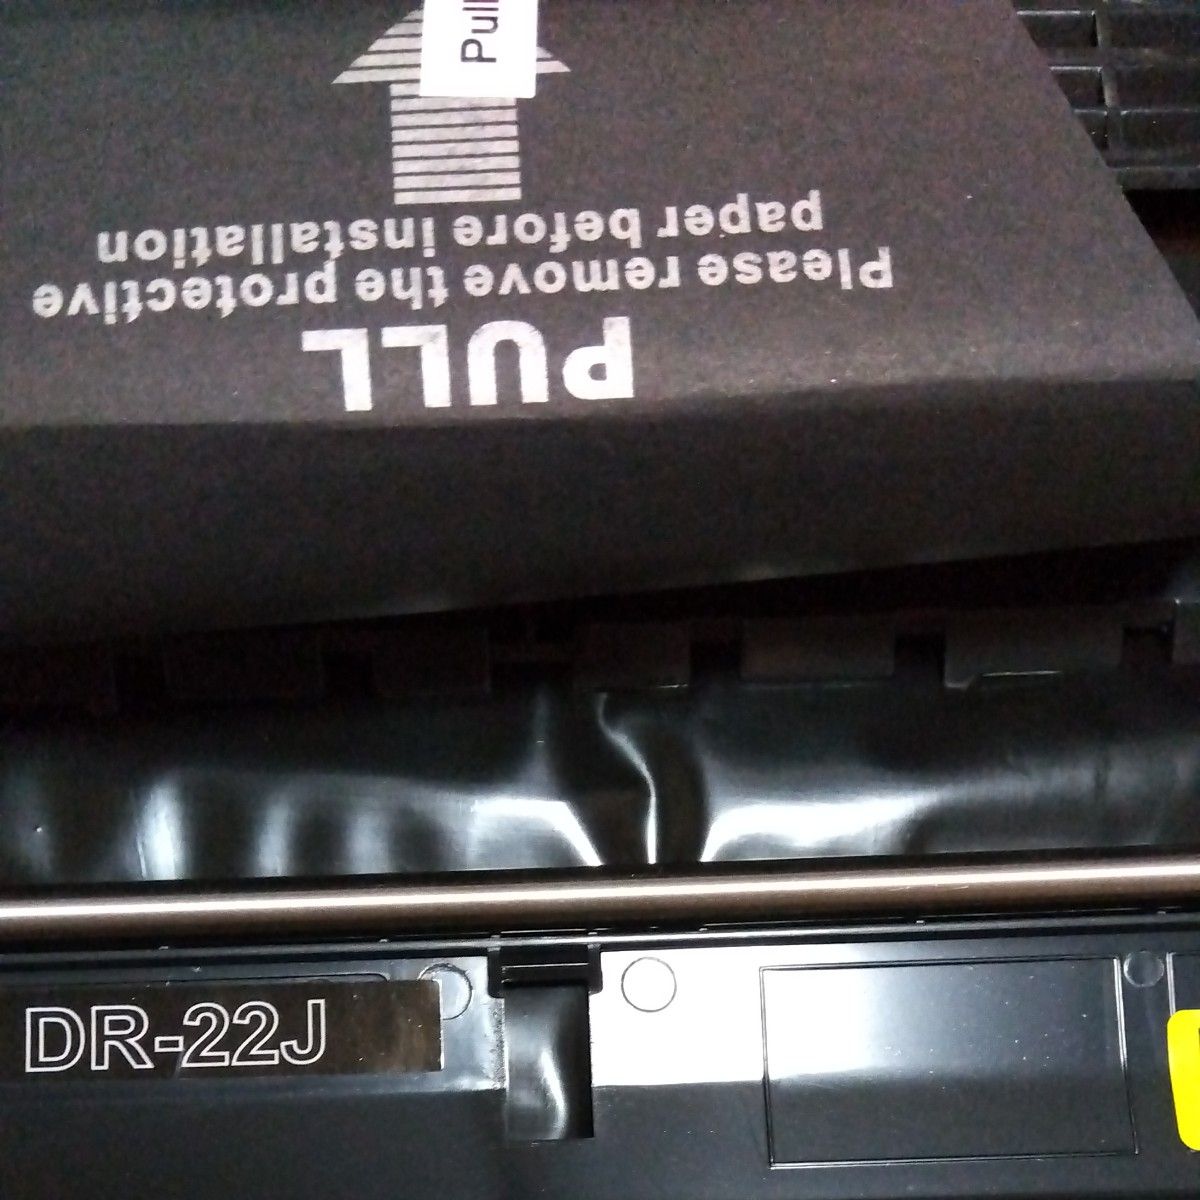 DRー22Jブラザープリンターの互換ドラムユニット